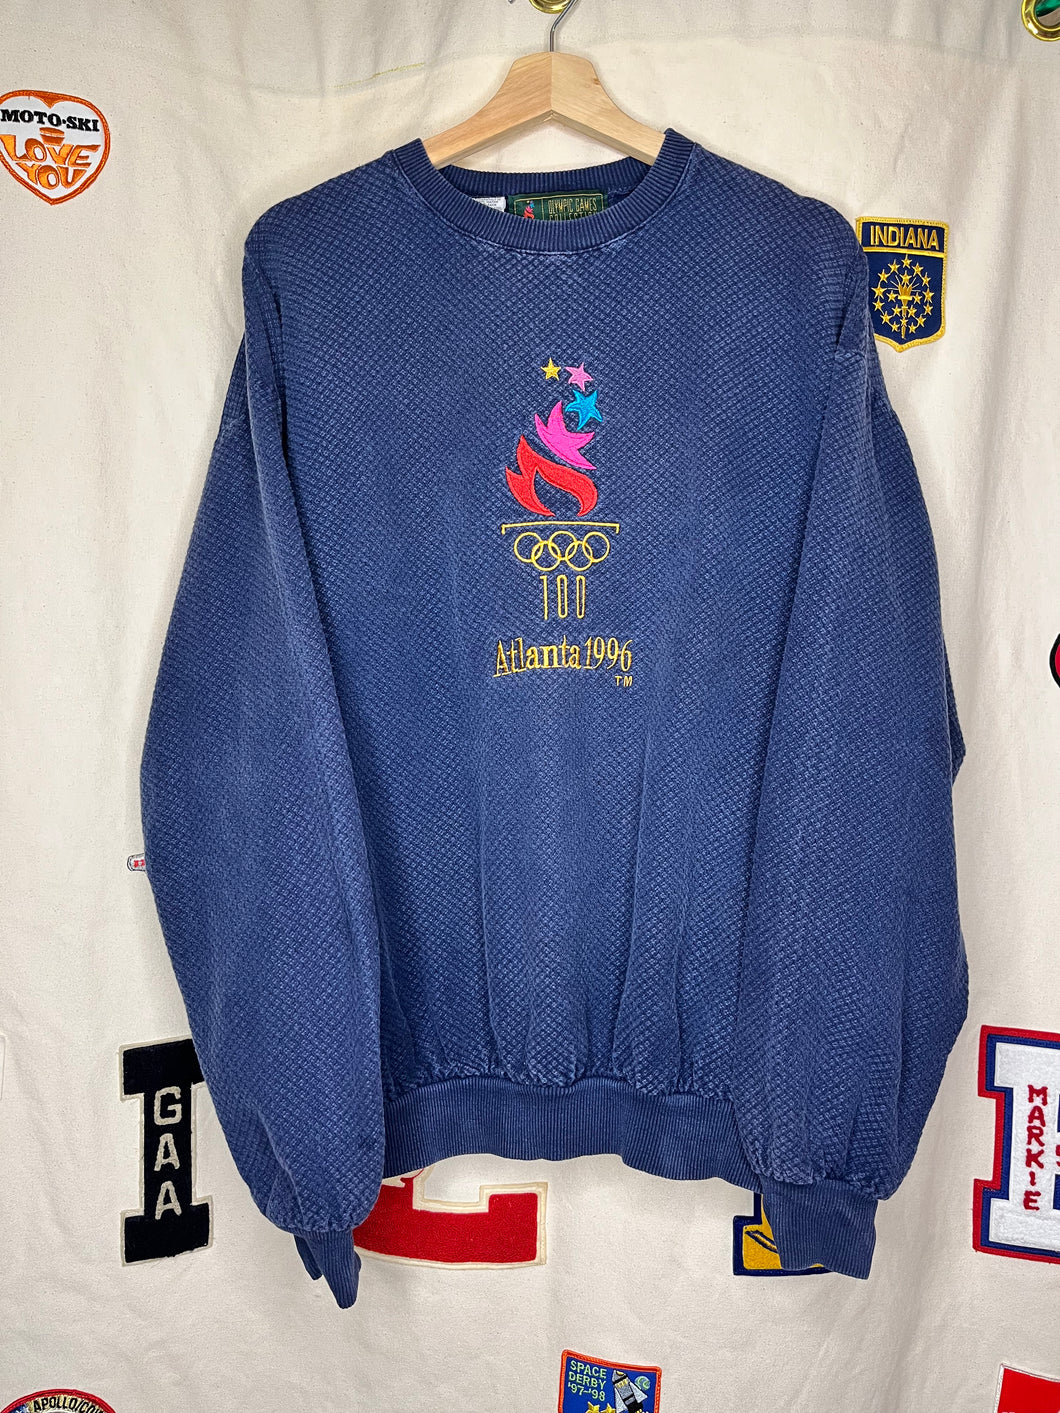 Vintage Atlanta 1996 Olympics Embroidered Navy Crewneck Sweatshirt: Medium